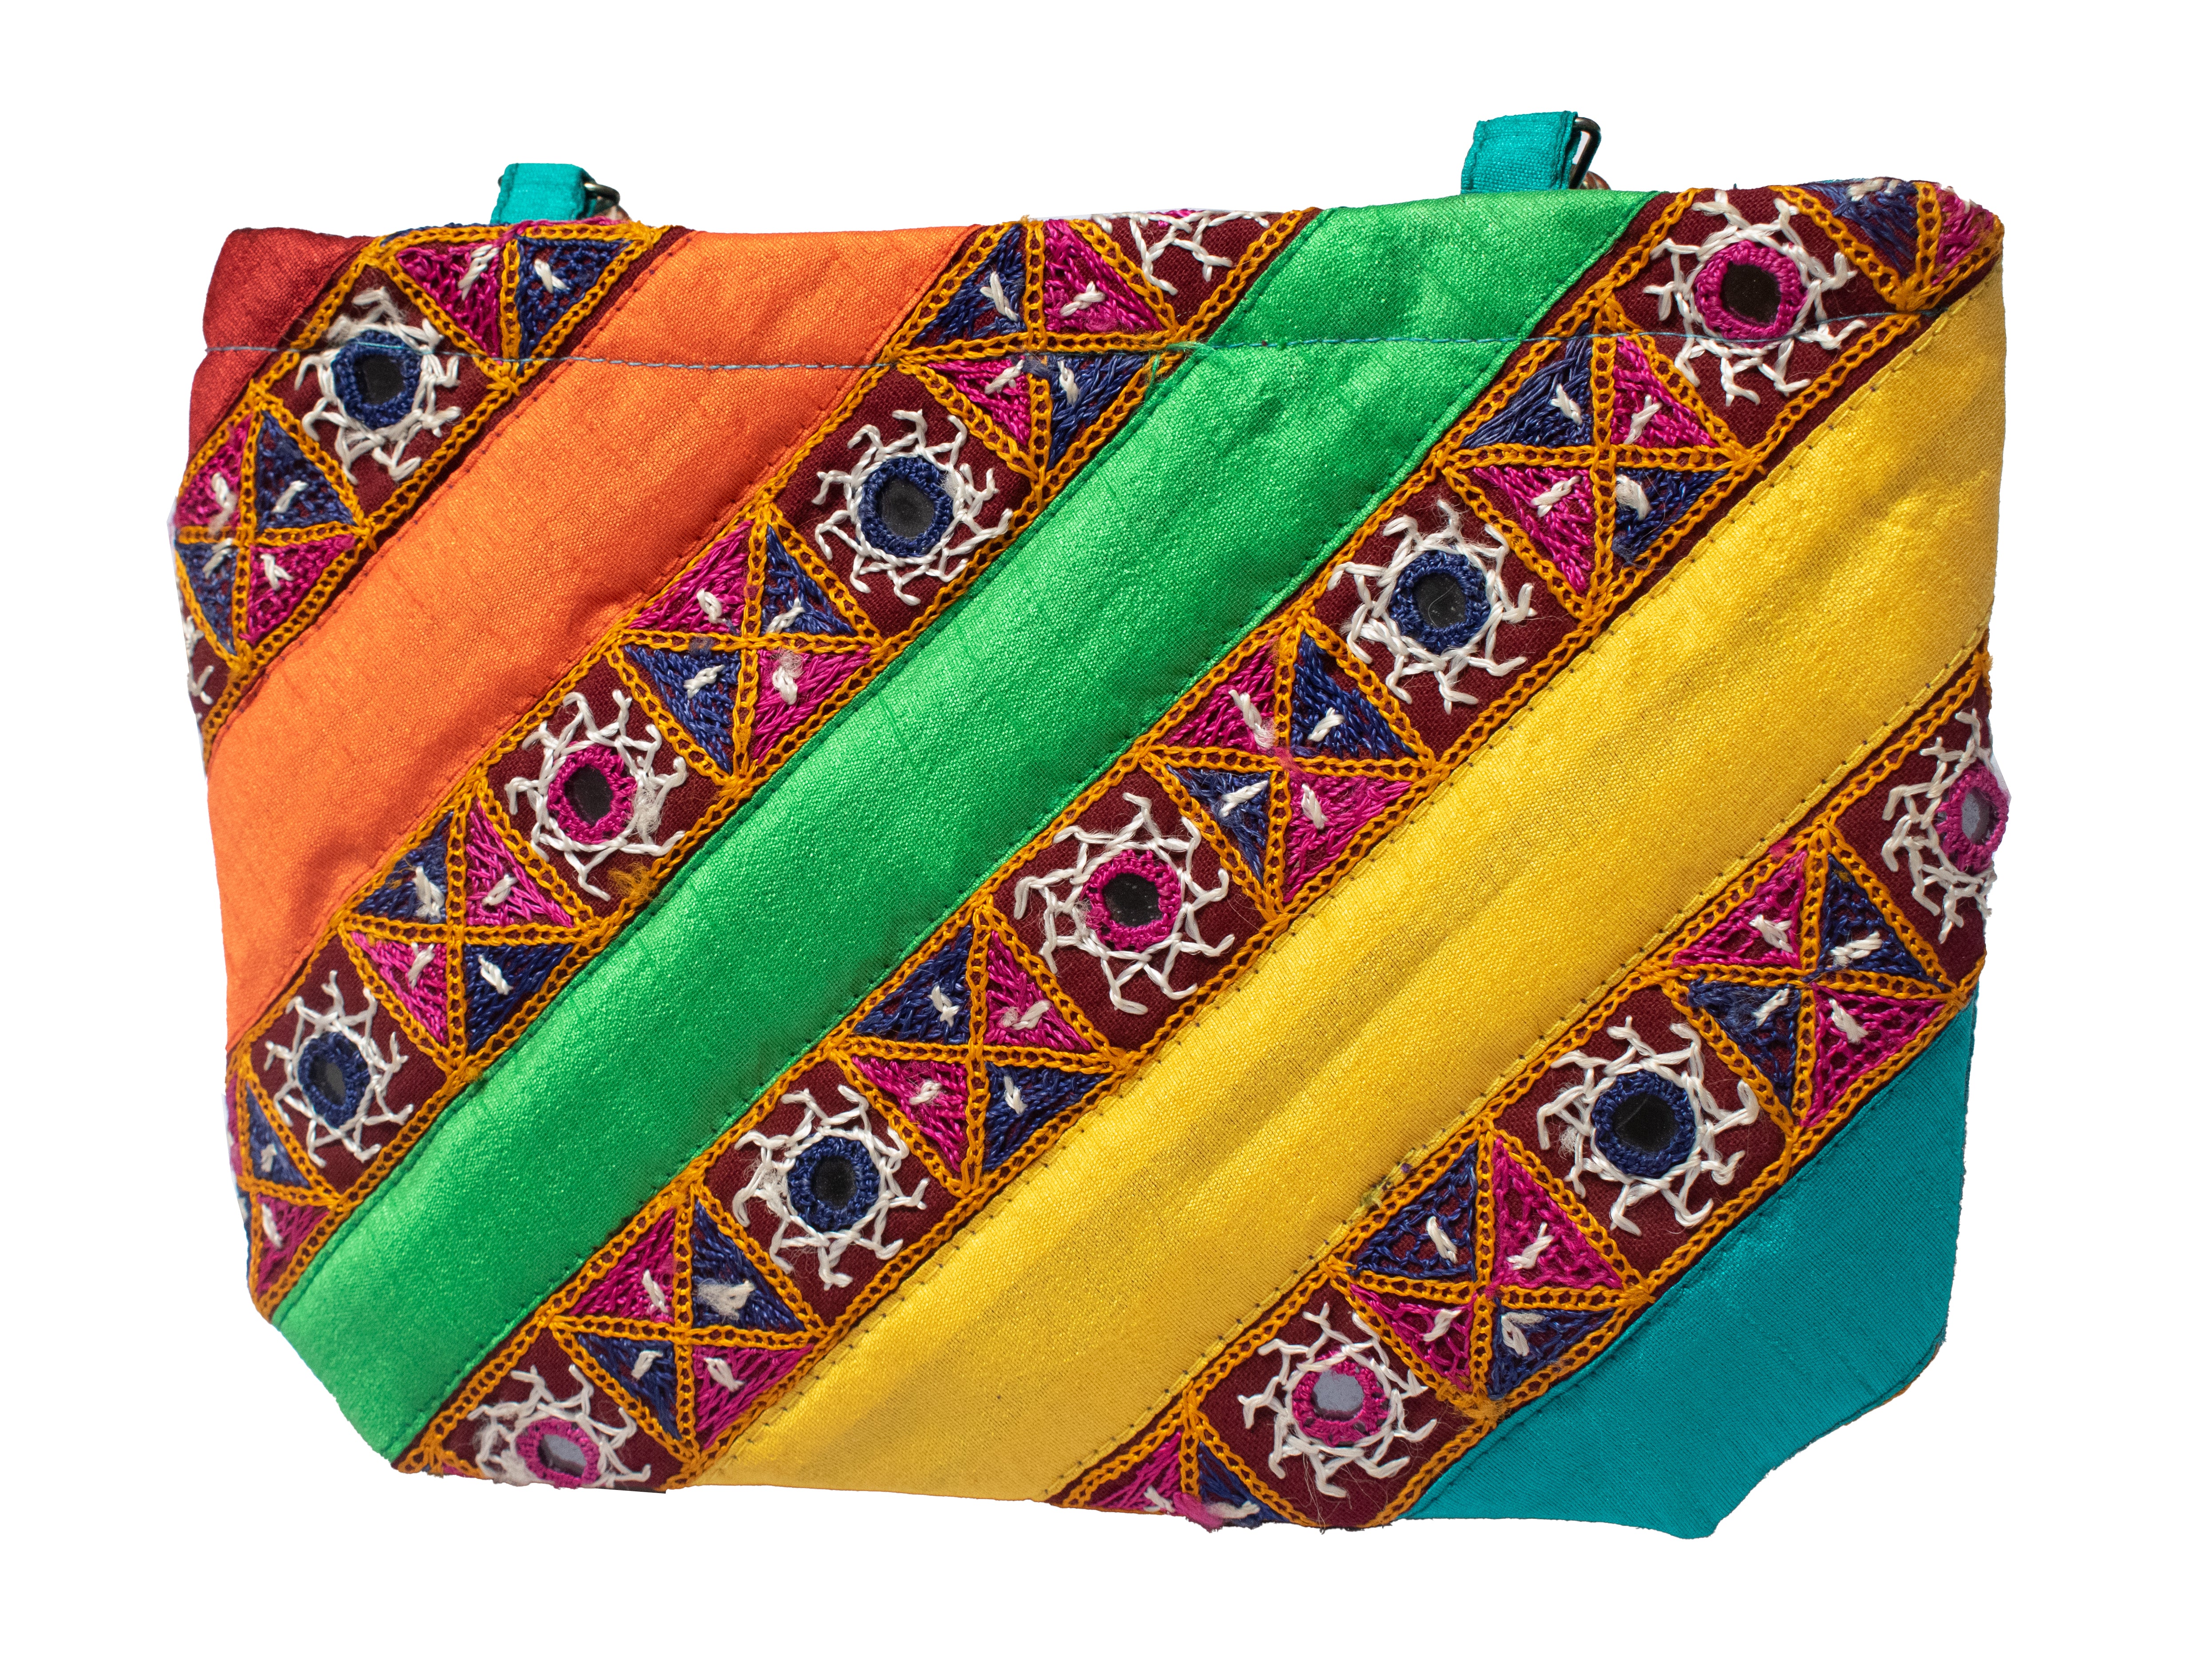 Indian Women's Handbag Tote Ethnic Shoulder Boho Bag